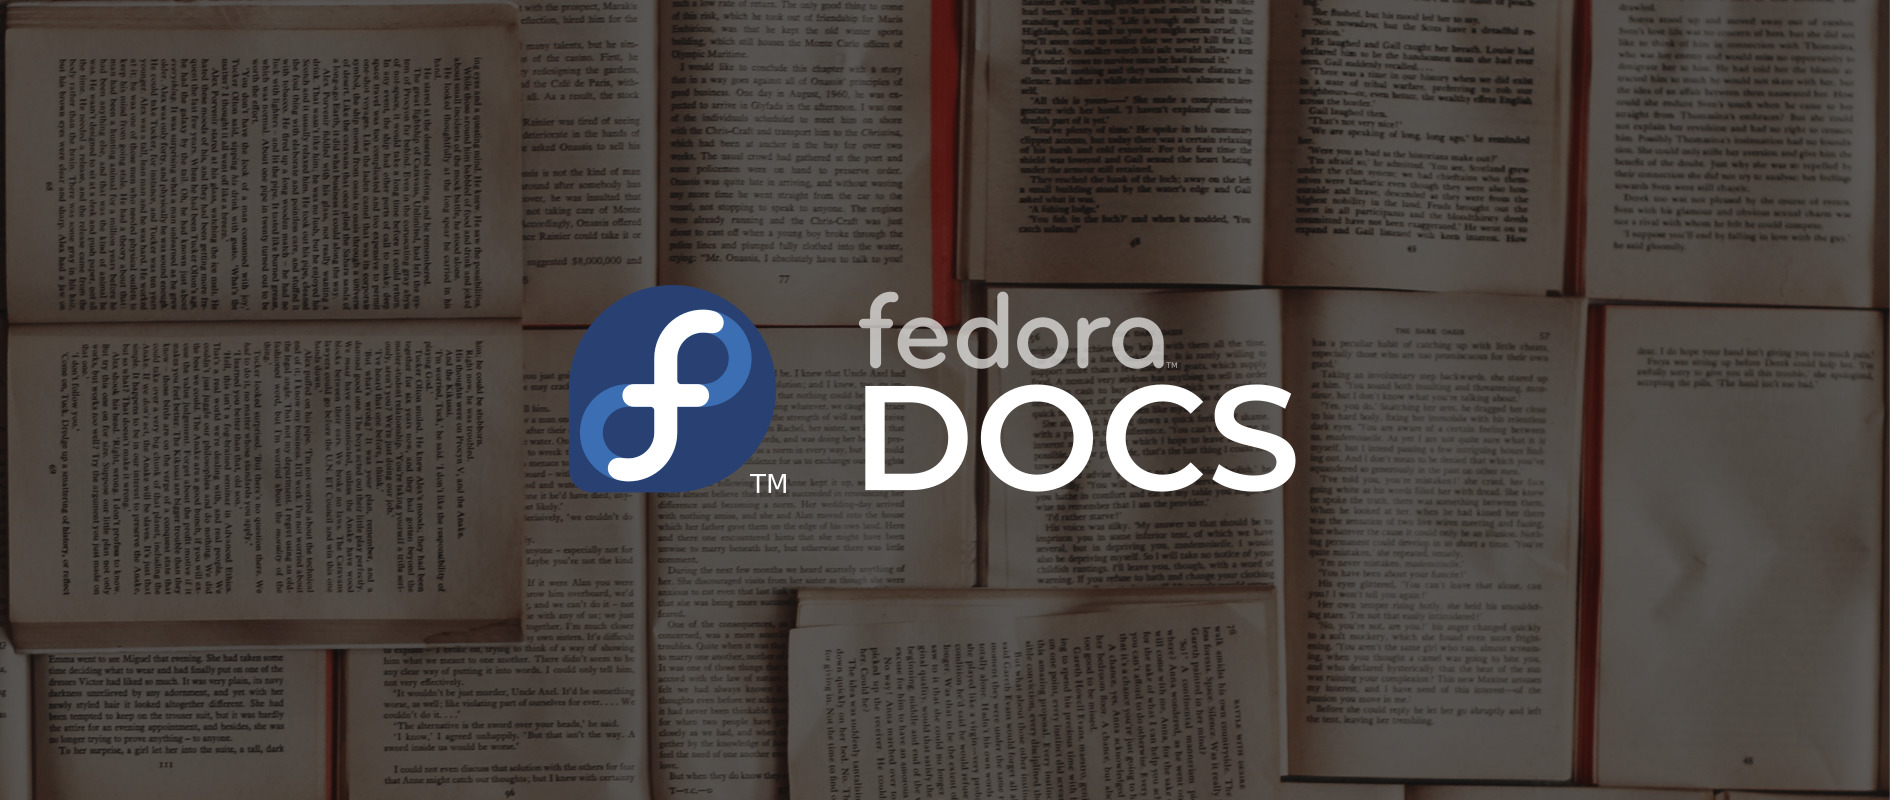 Logotipo da Equipe de Documentação do Fedora com a Marca Registrada do Fedora; páginas do livro em segundo plano.